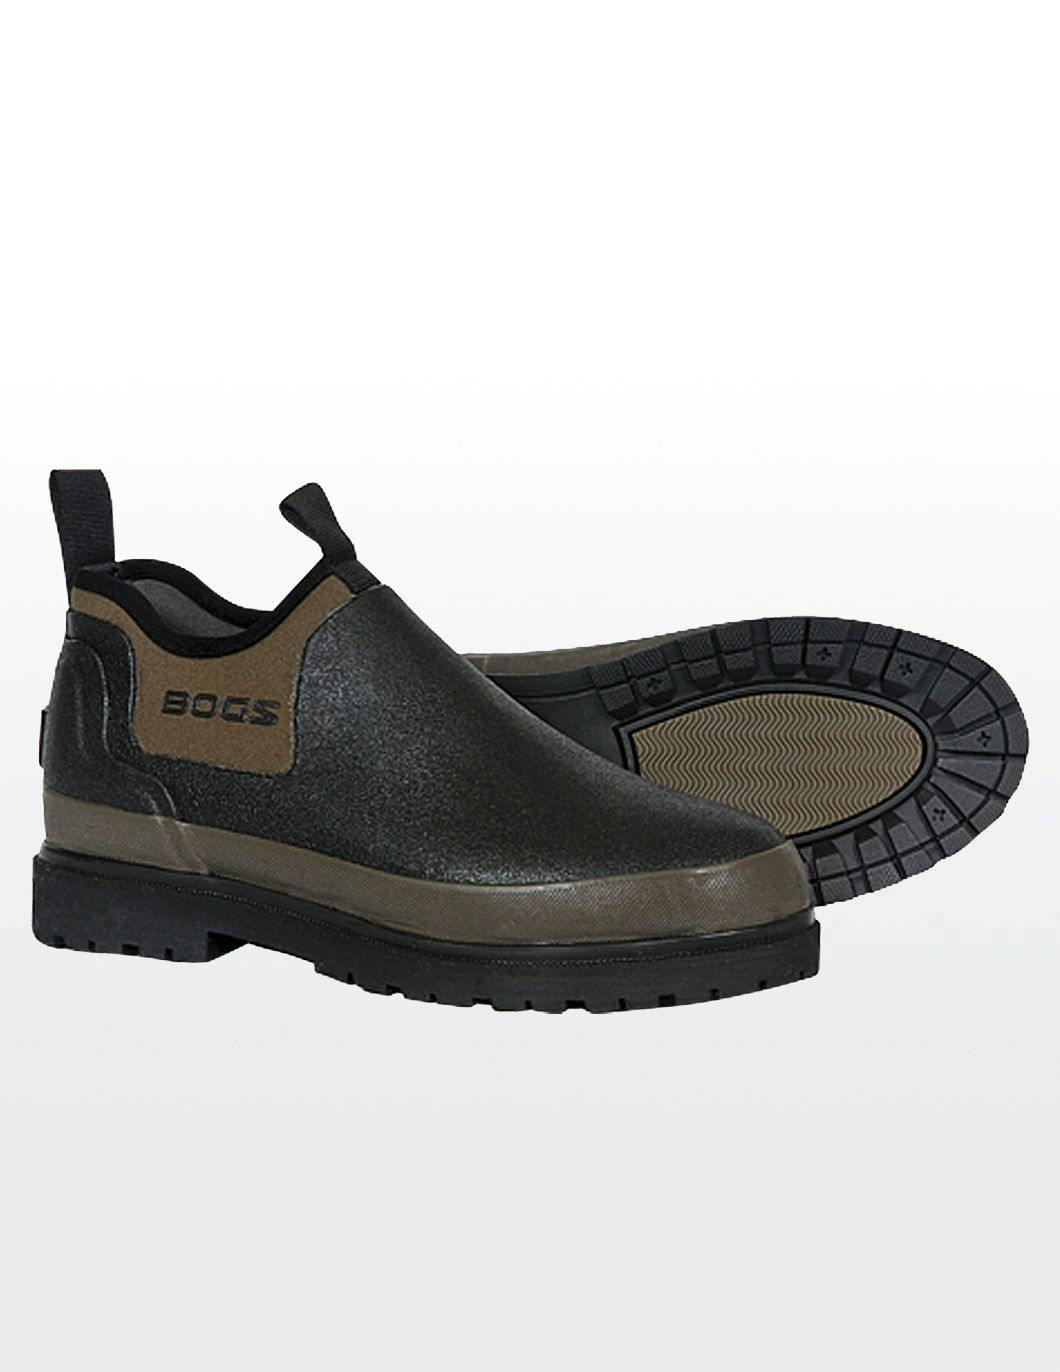 bogs-mens-tillamook-bay-shoe